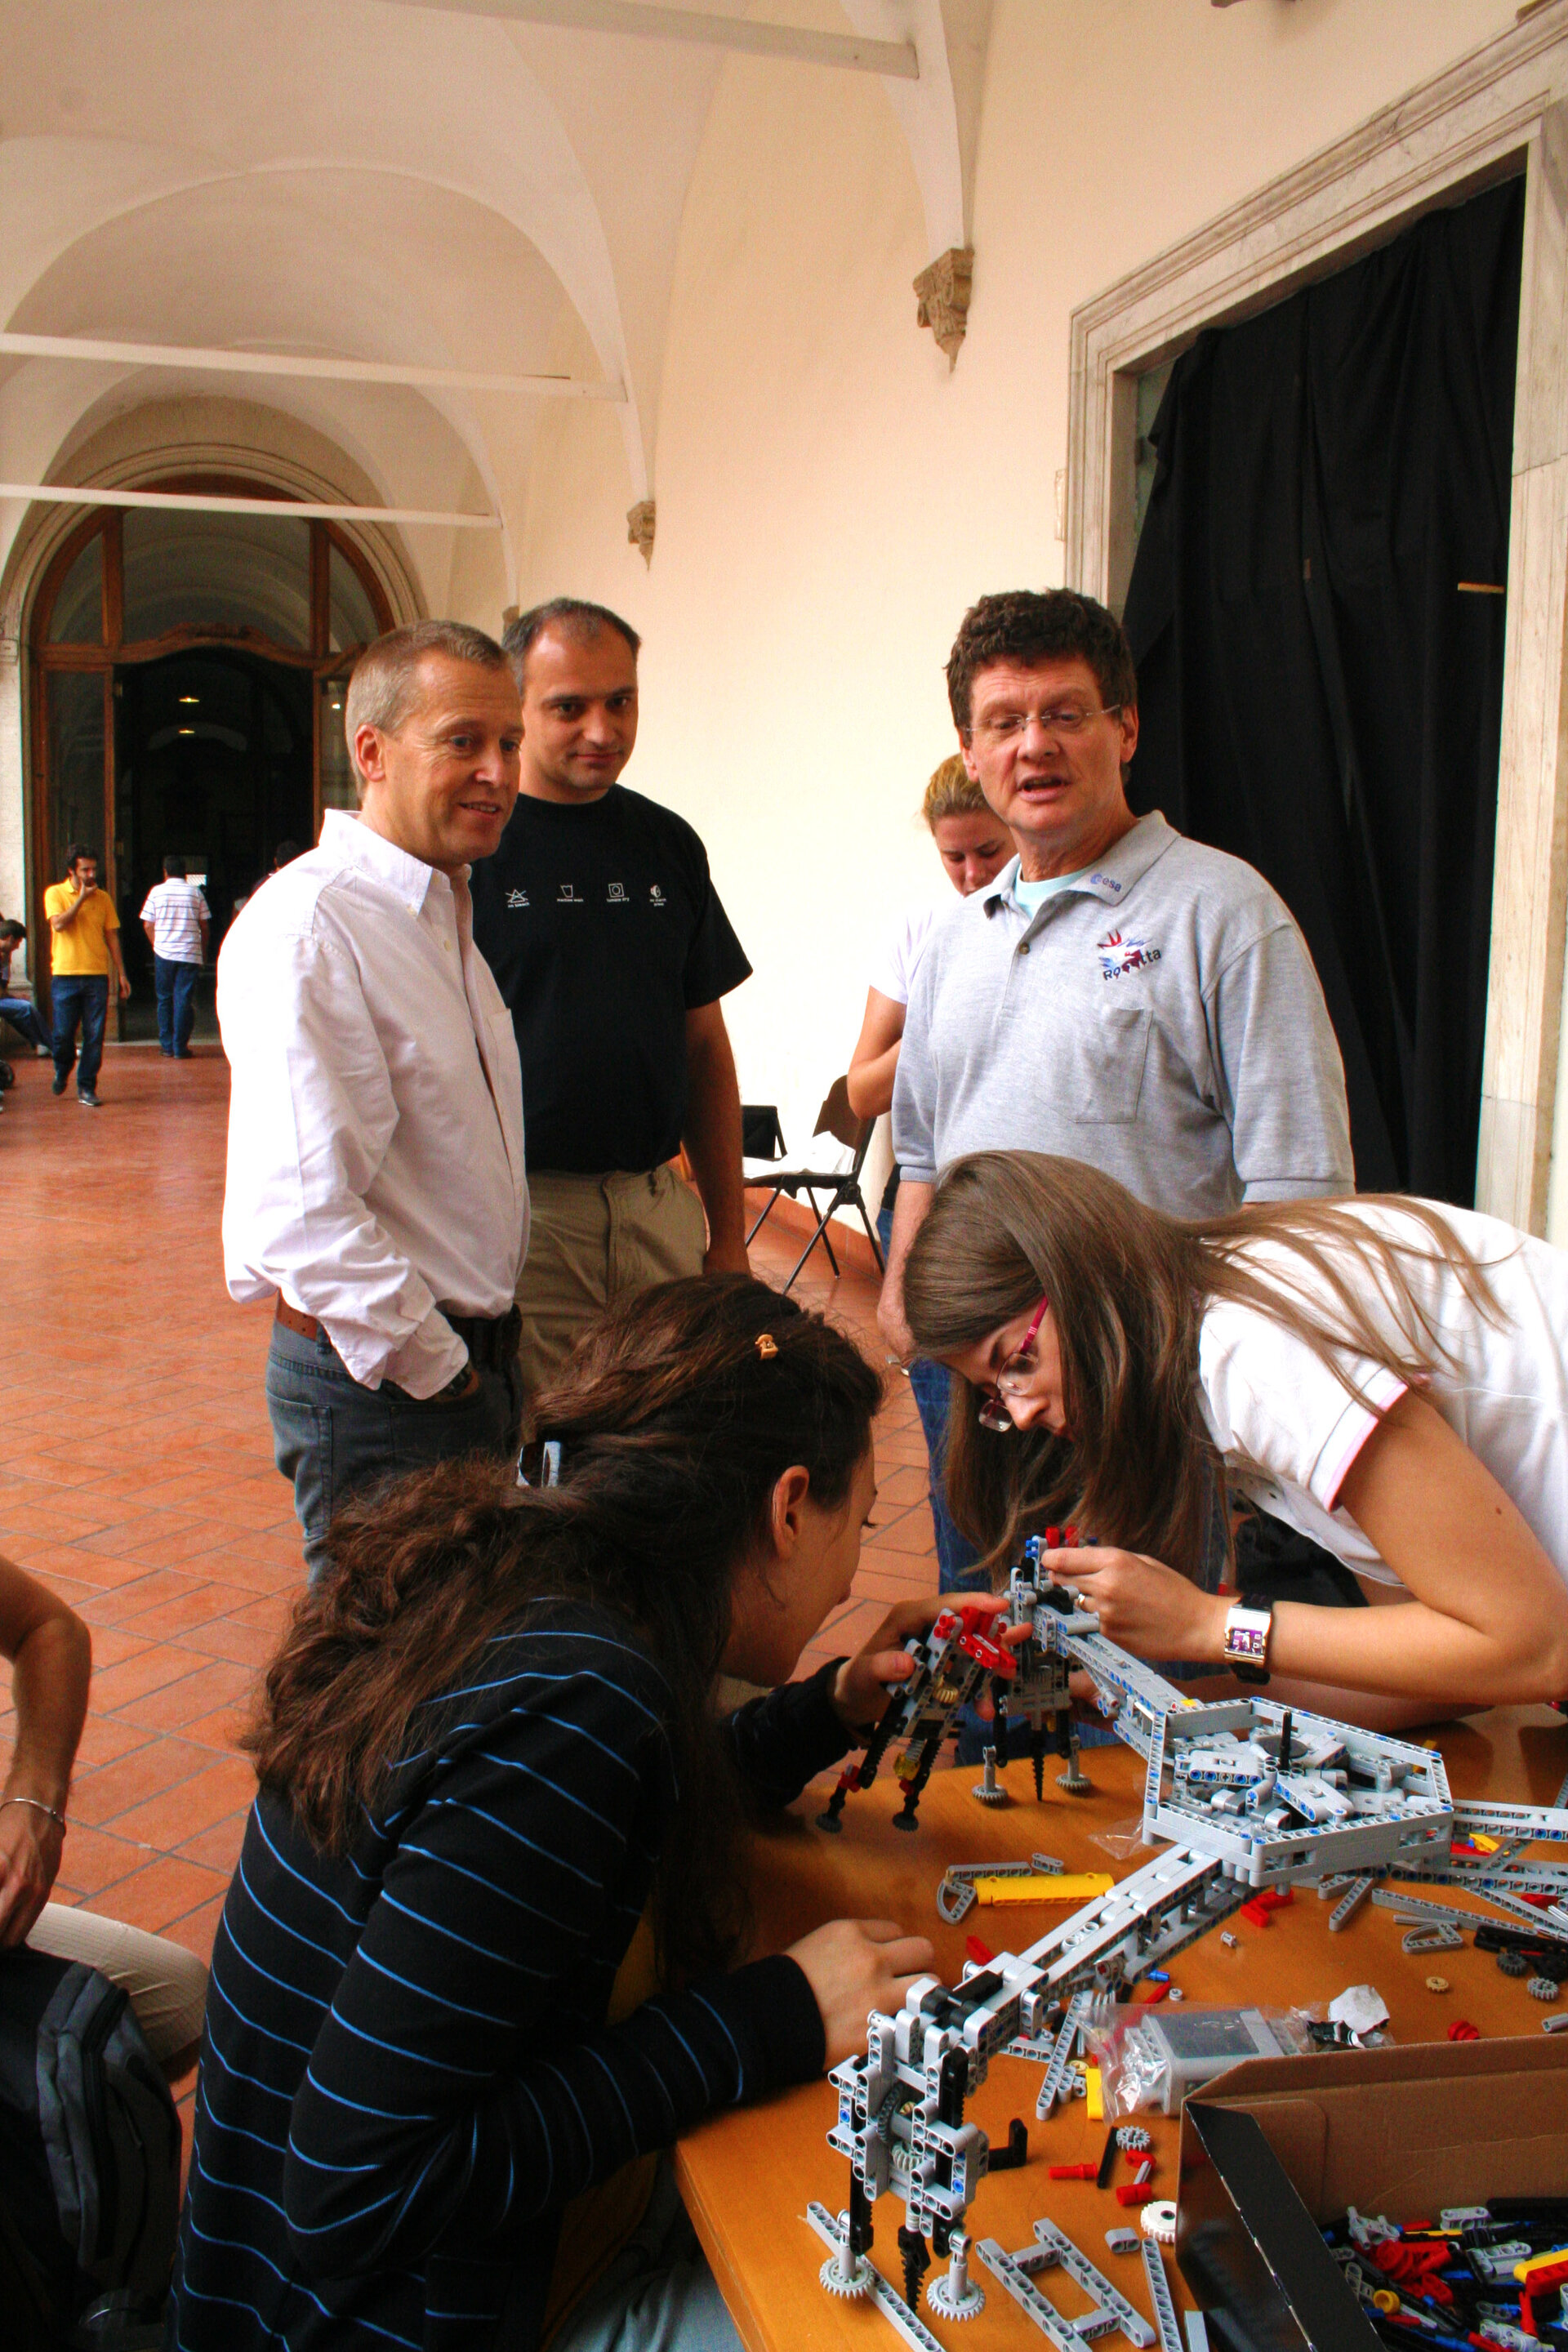 De studerende i gang med at samle LEGO-modellen.